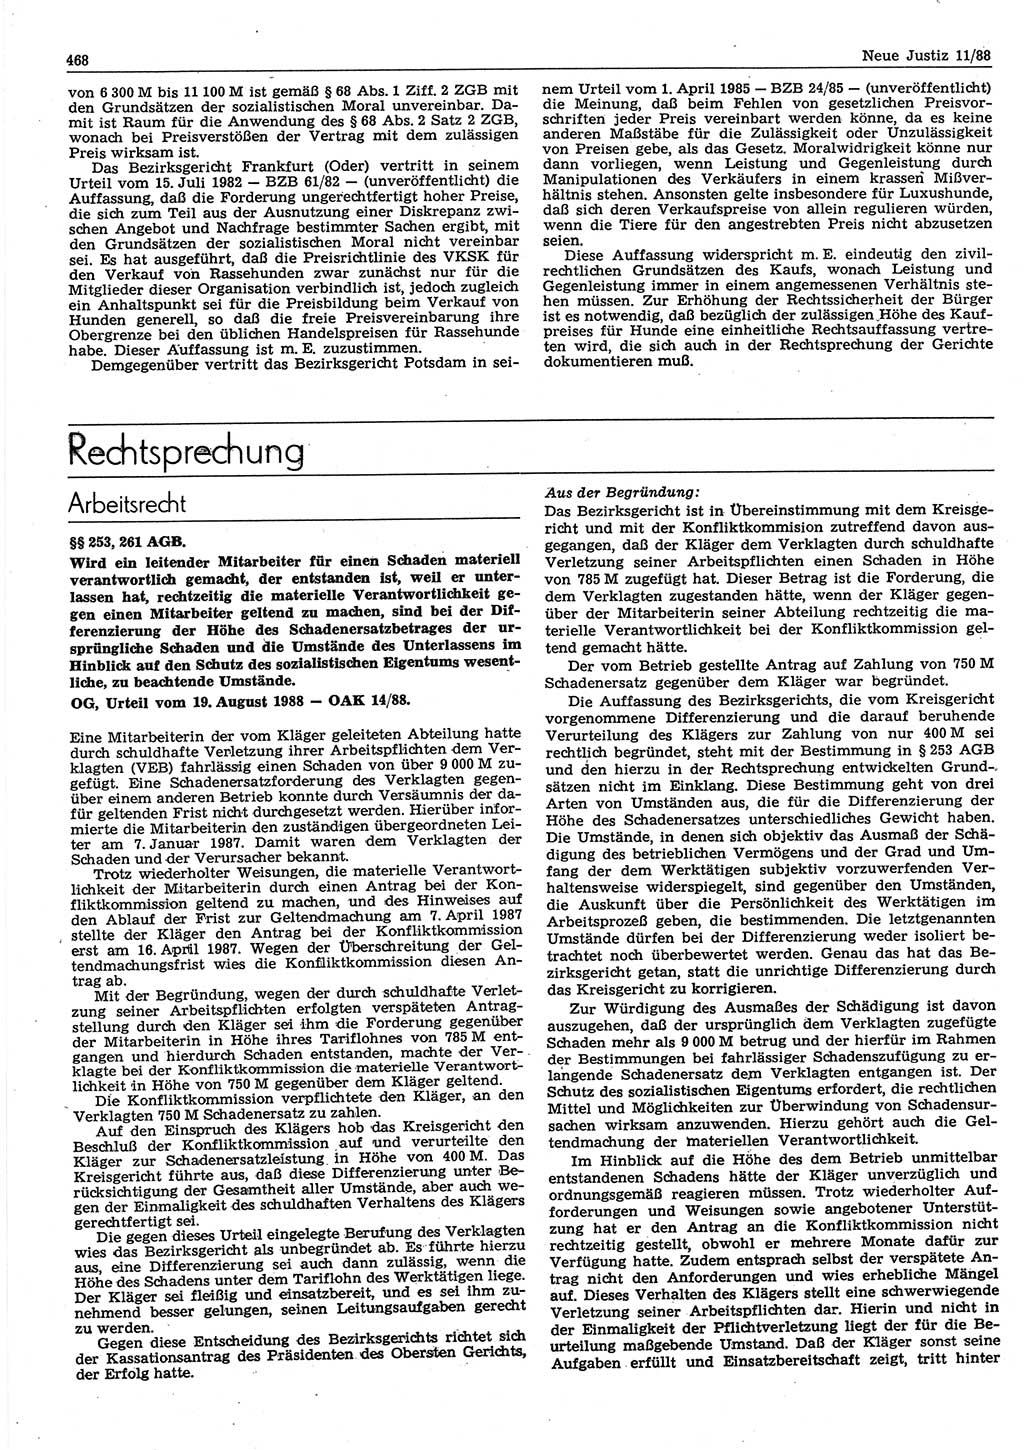 Neue Justiz (NJ), Zeitschrift für sozialistisches Recht und Gesetzlichkeit [Deutsche Demokratische Republik (DDR)], 42. Jahrgang 1988, Seite 468 (NJ DDR 1988, S. 468)